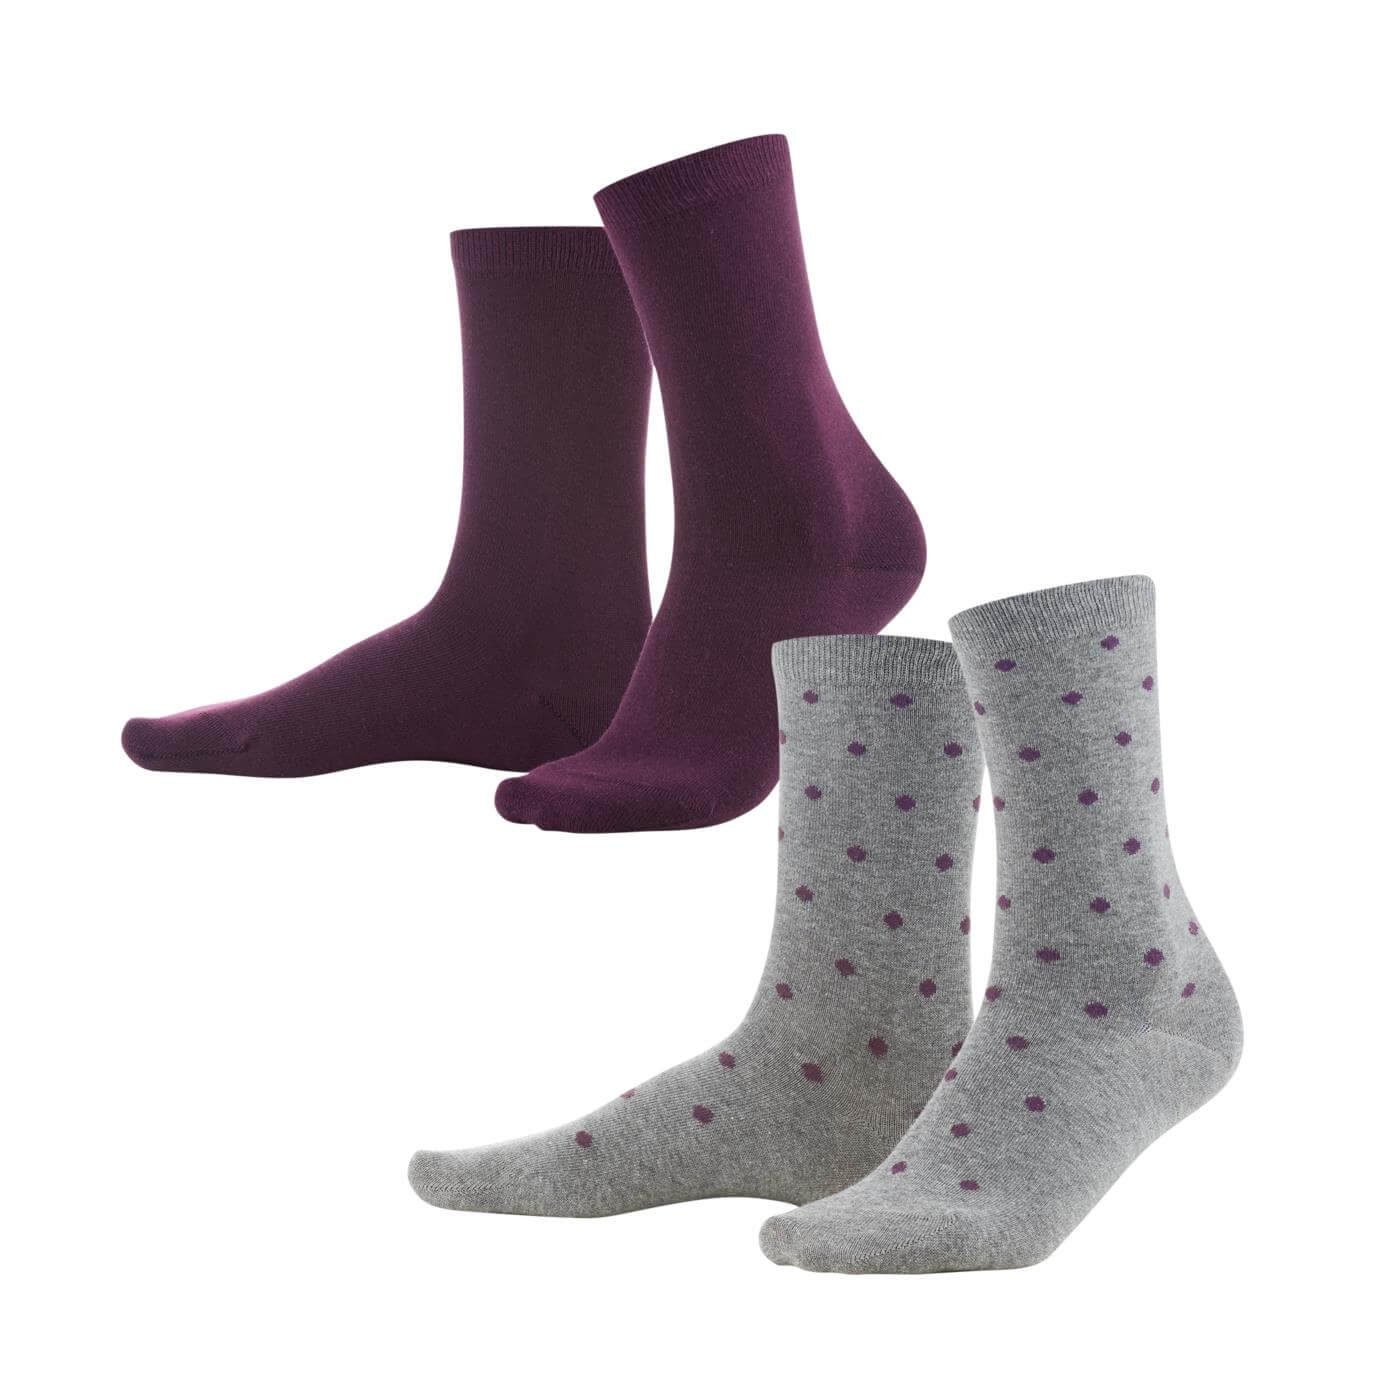 Einmal im BETTINA einmal Socken dezent Prune/Dots LIVING gepunktet, passenden Uni-Ton CRAFTS Dark